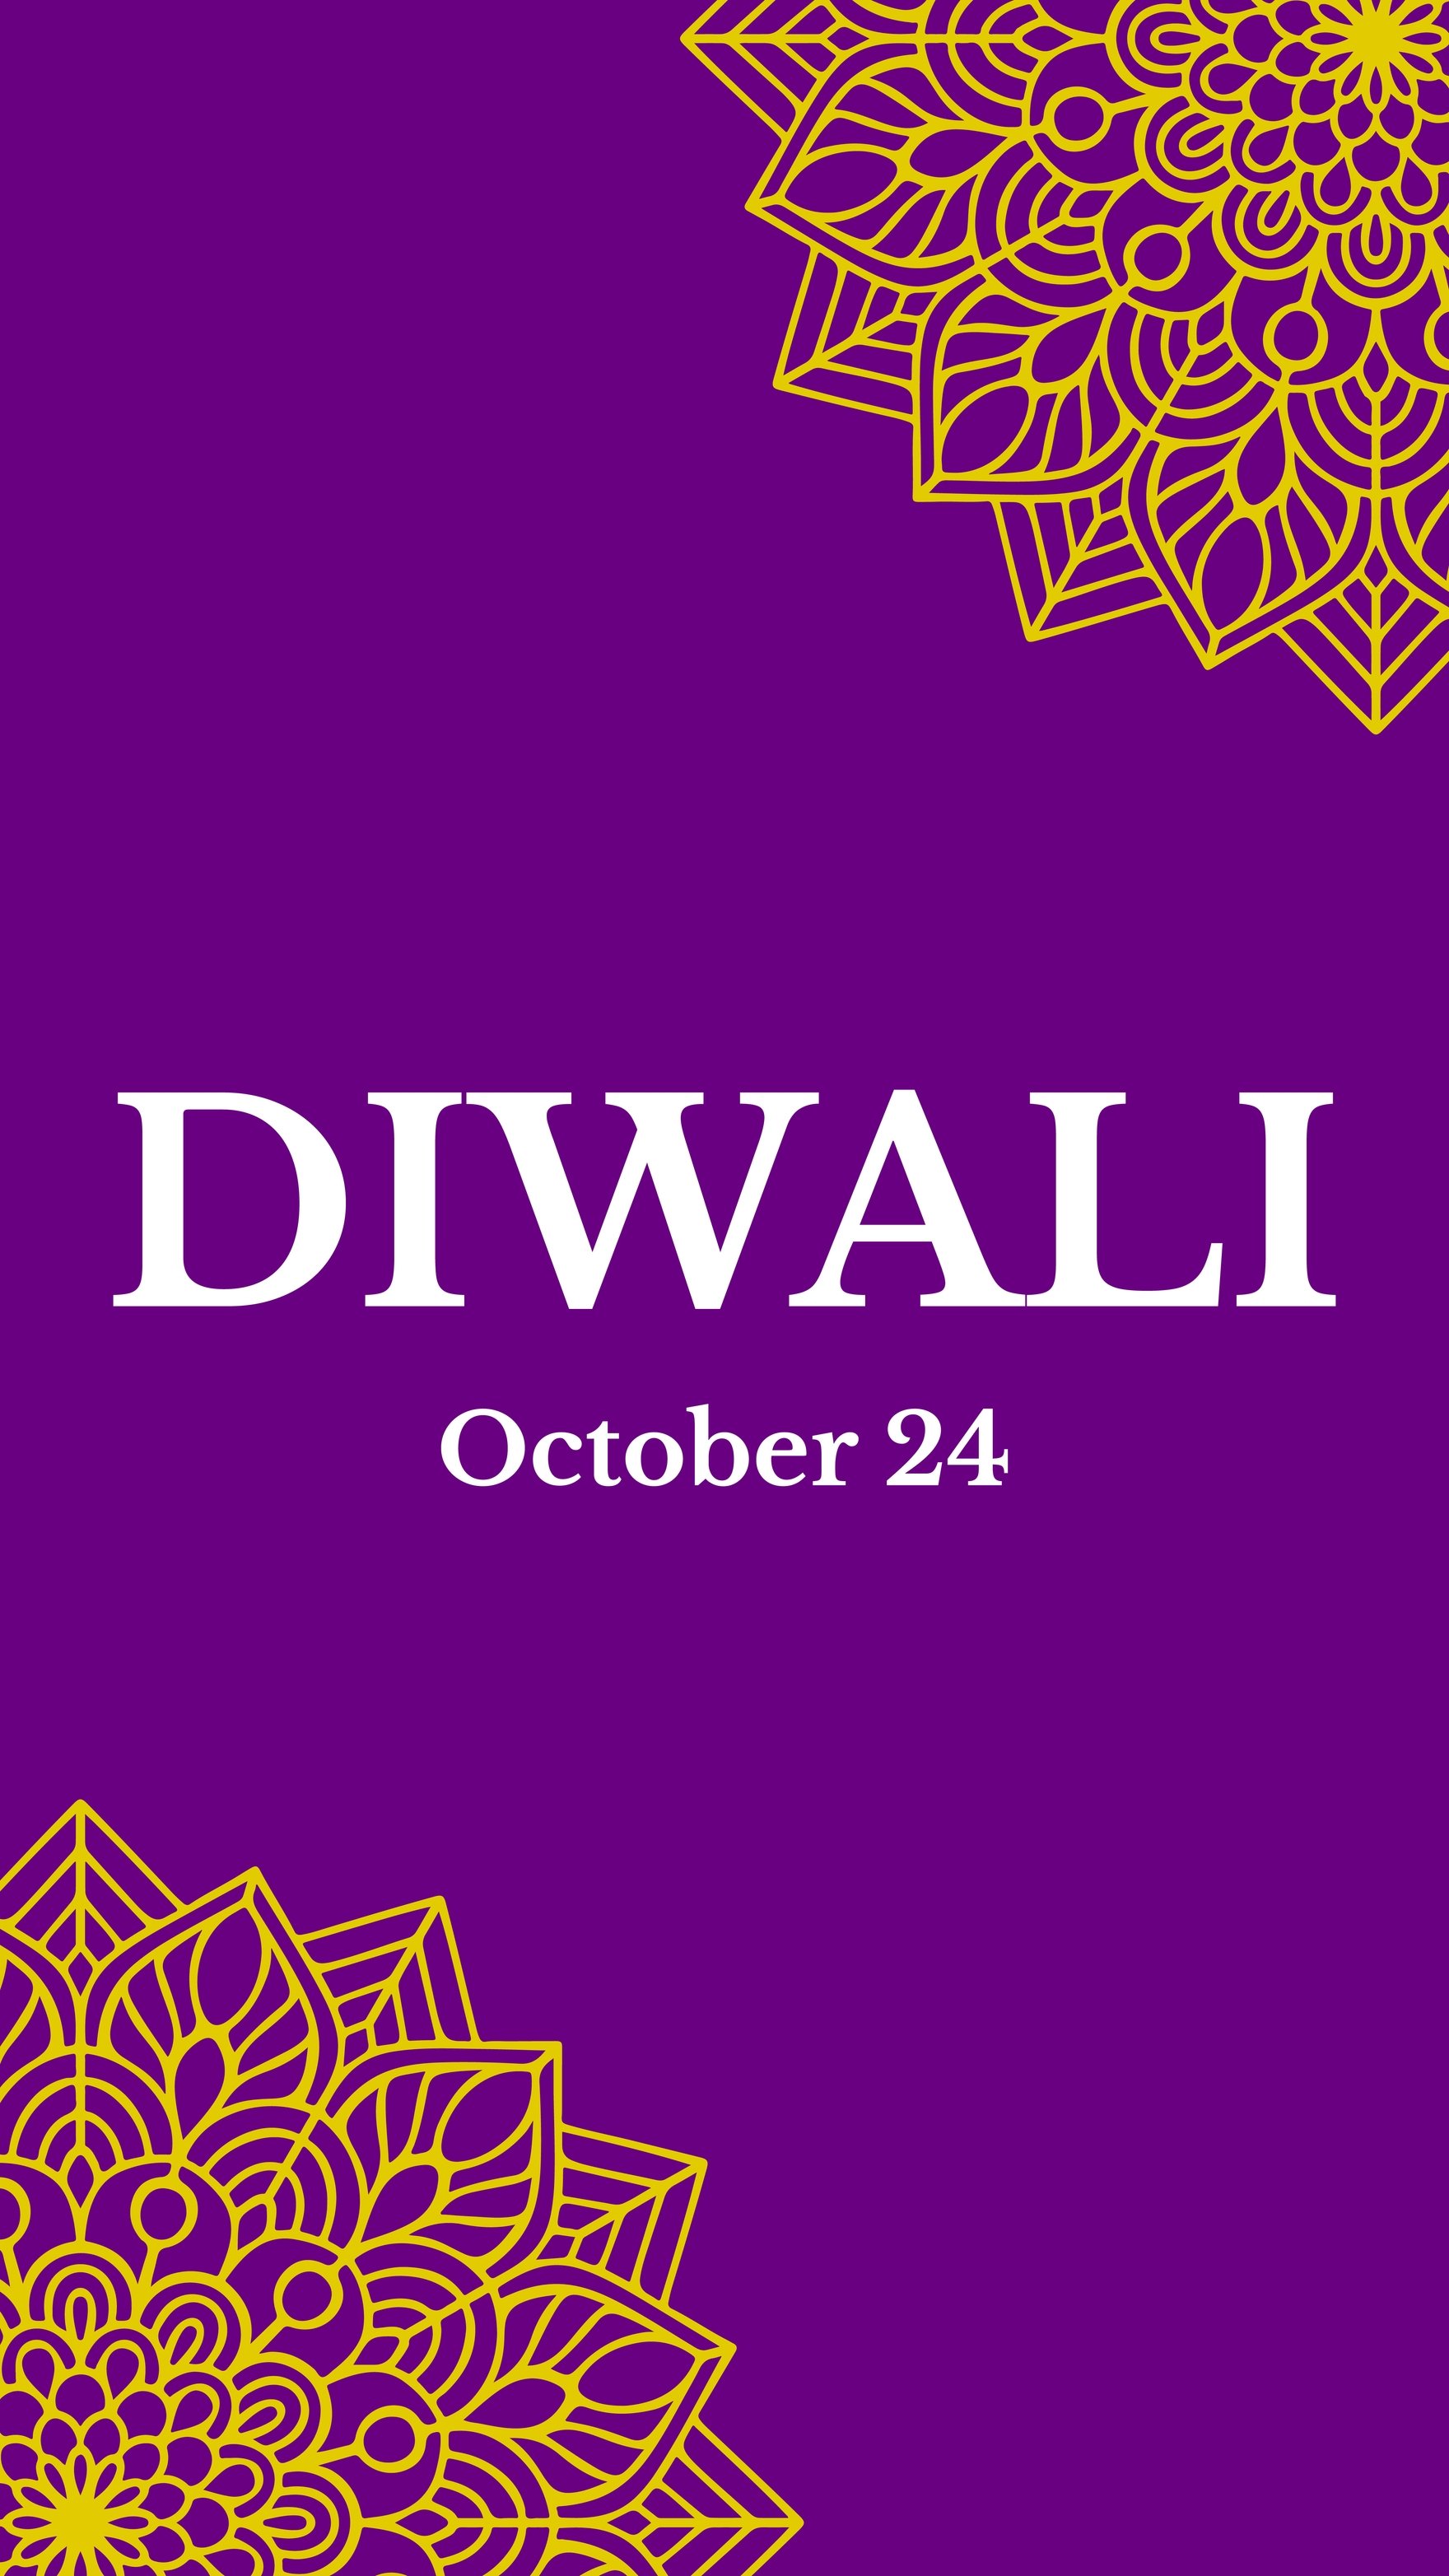 Free Diwali Instagram Story